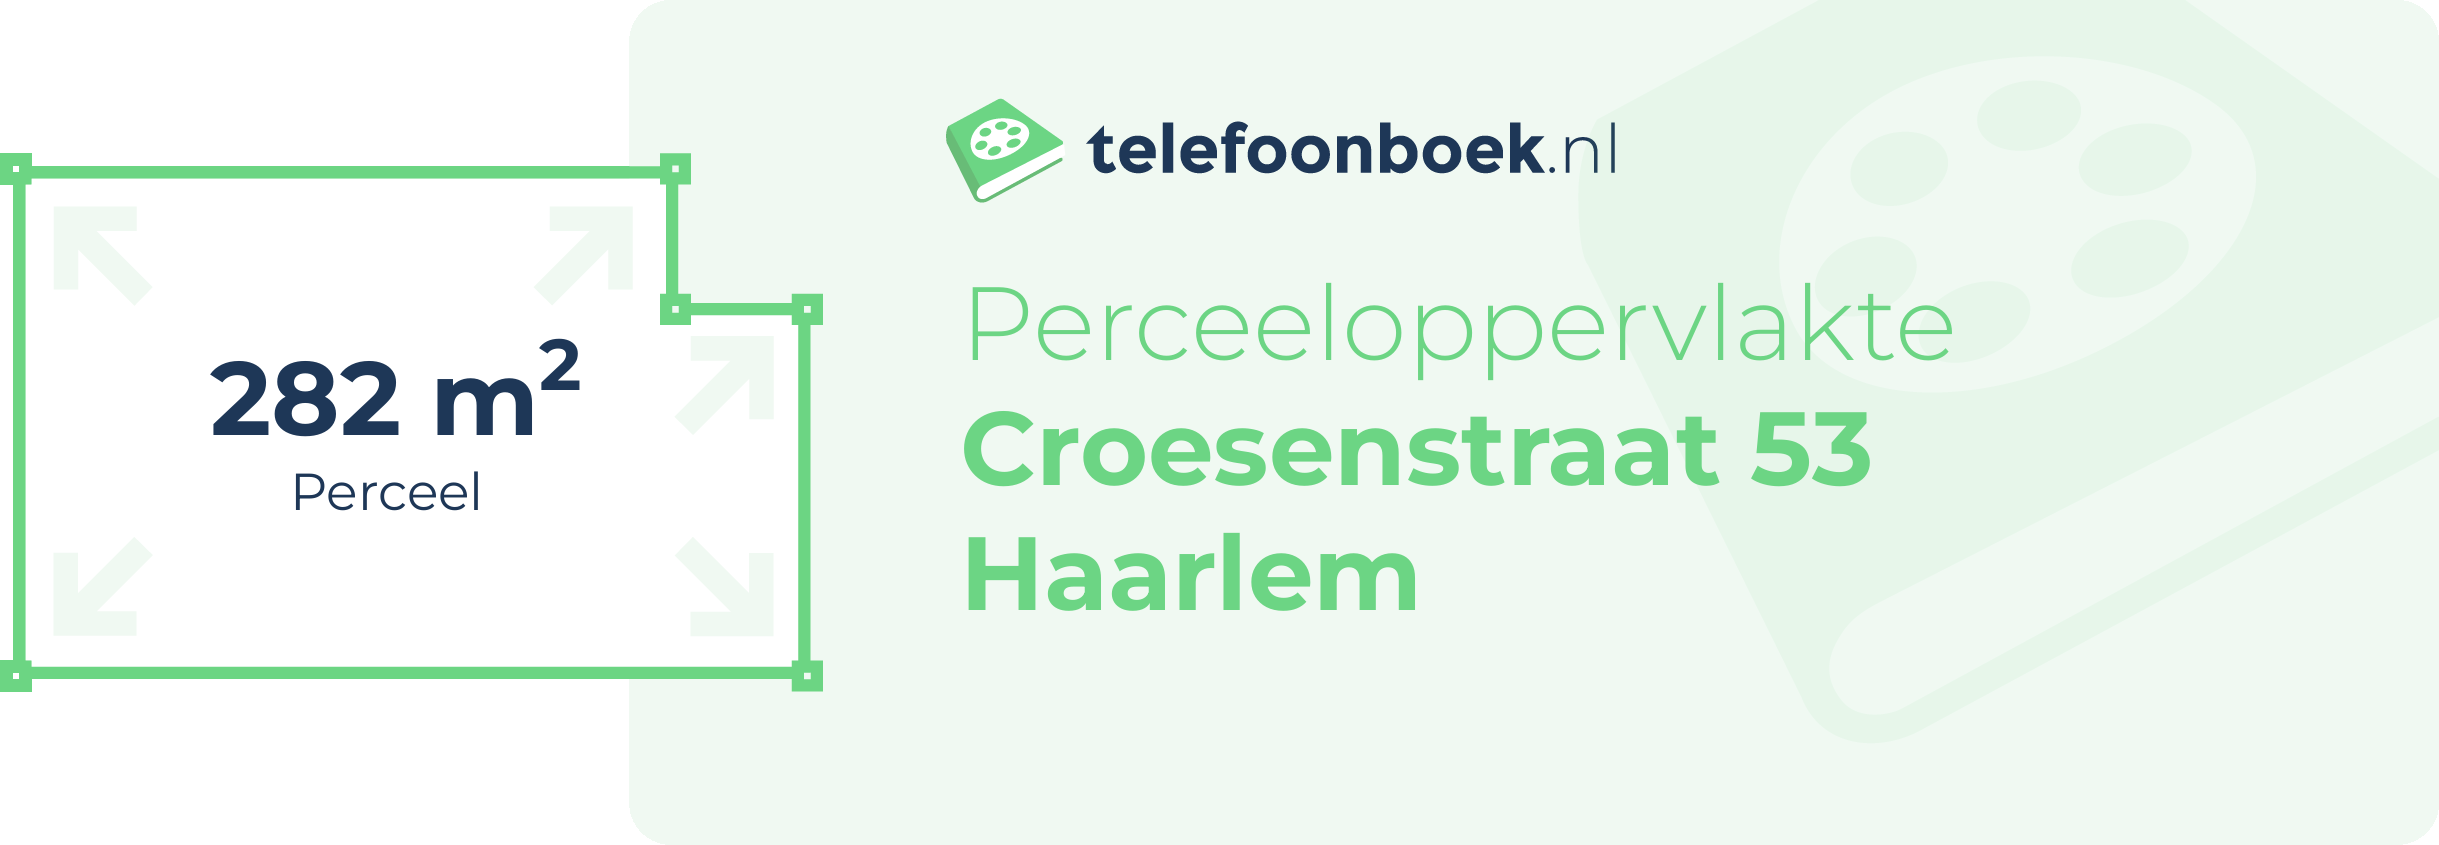 Perceeloppervlakte Croesenstraat 53 Haarlem